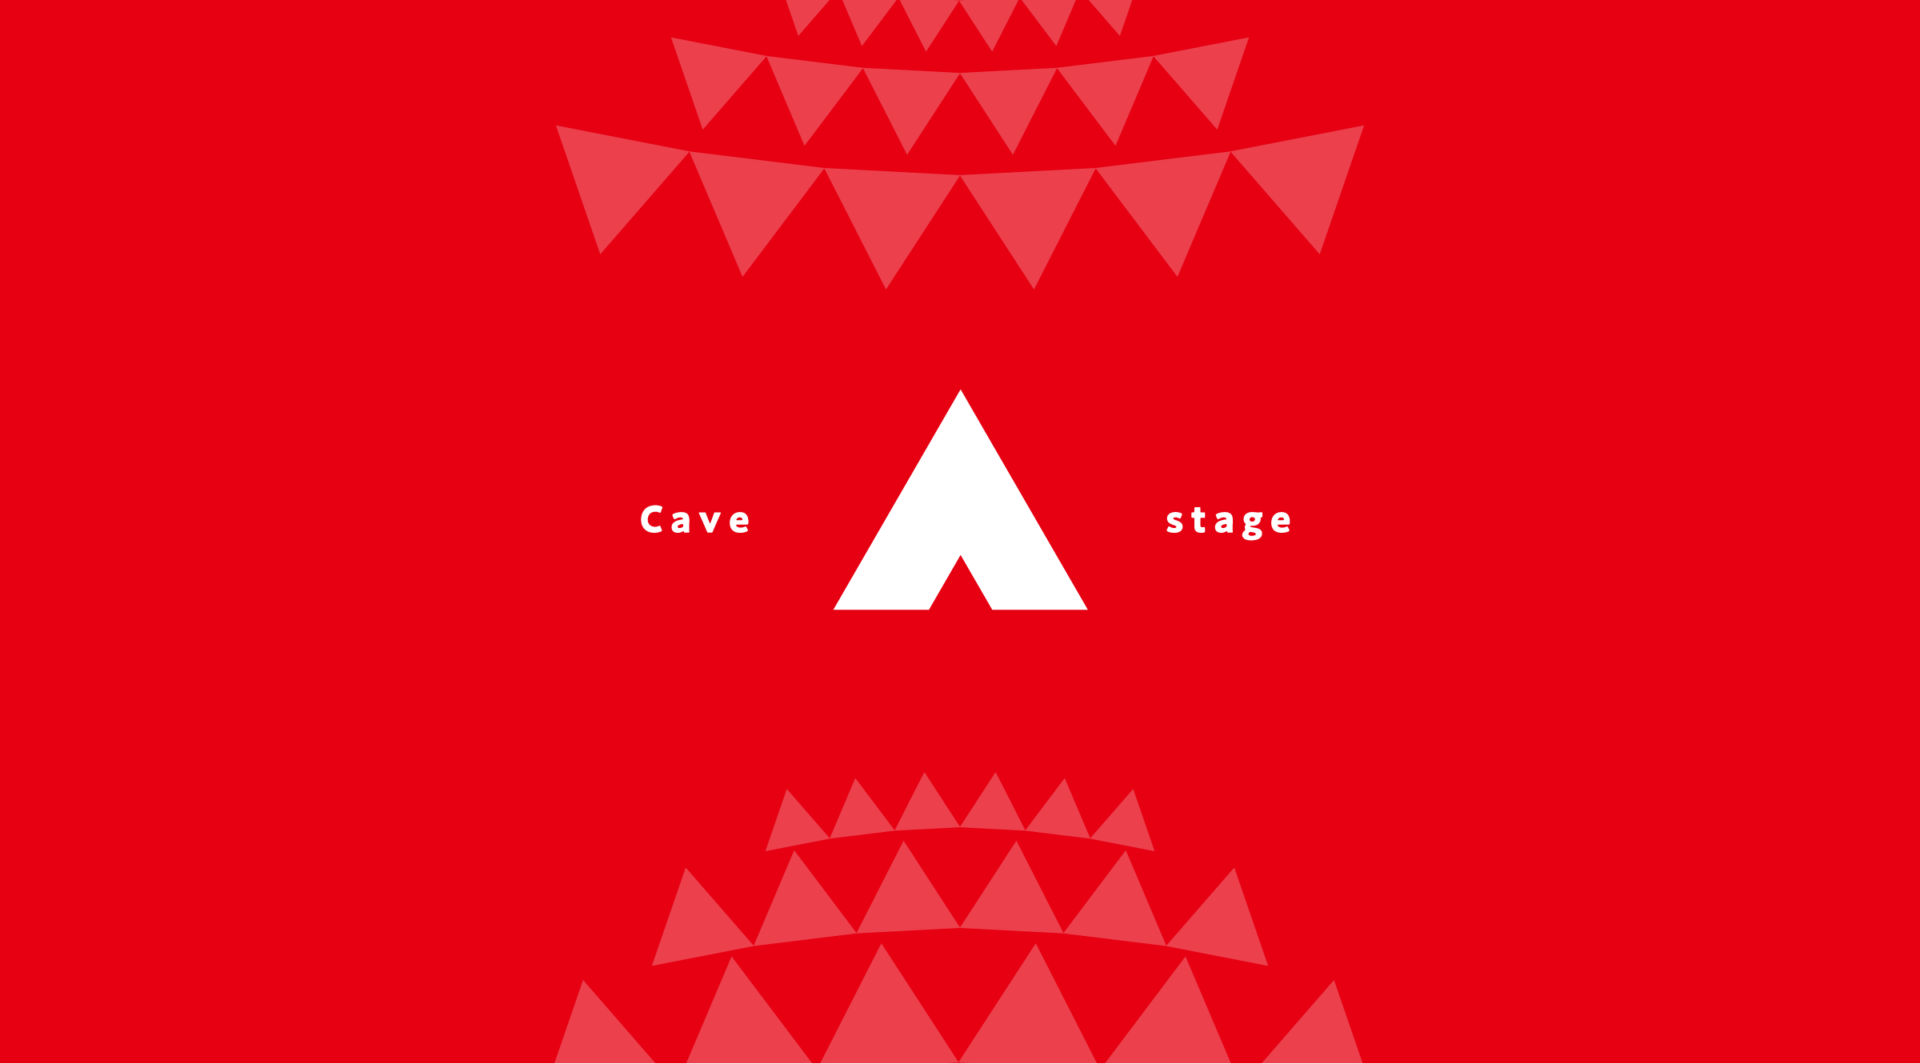 洞窟ステージを表すアイキャッチ画像